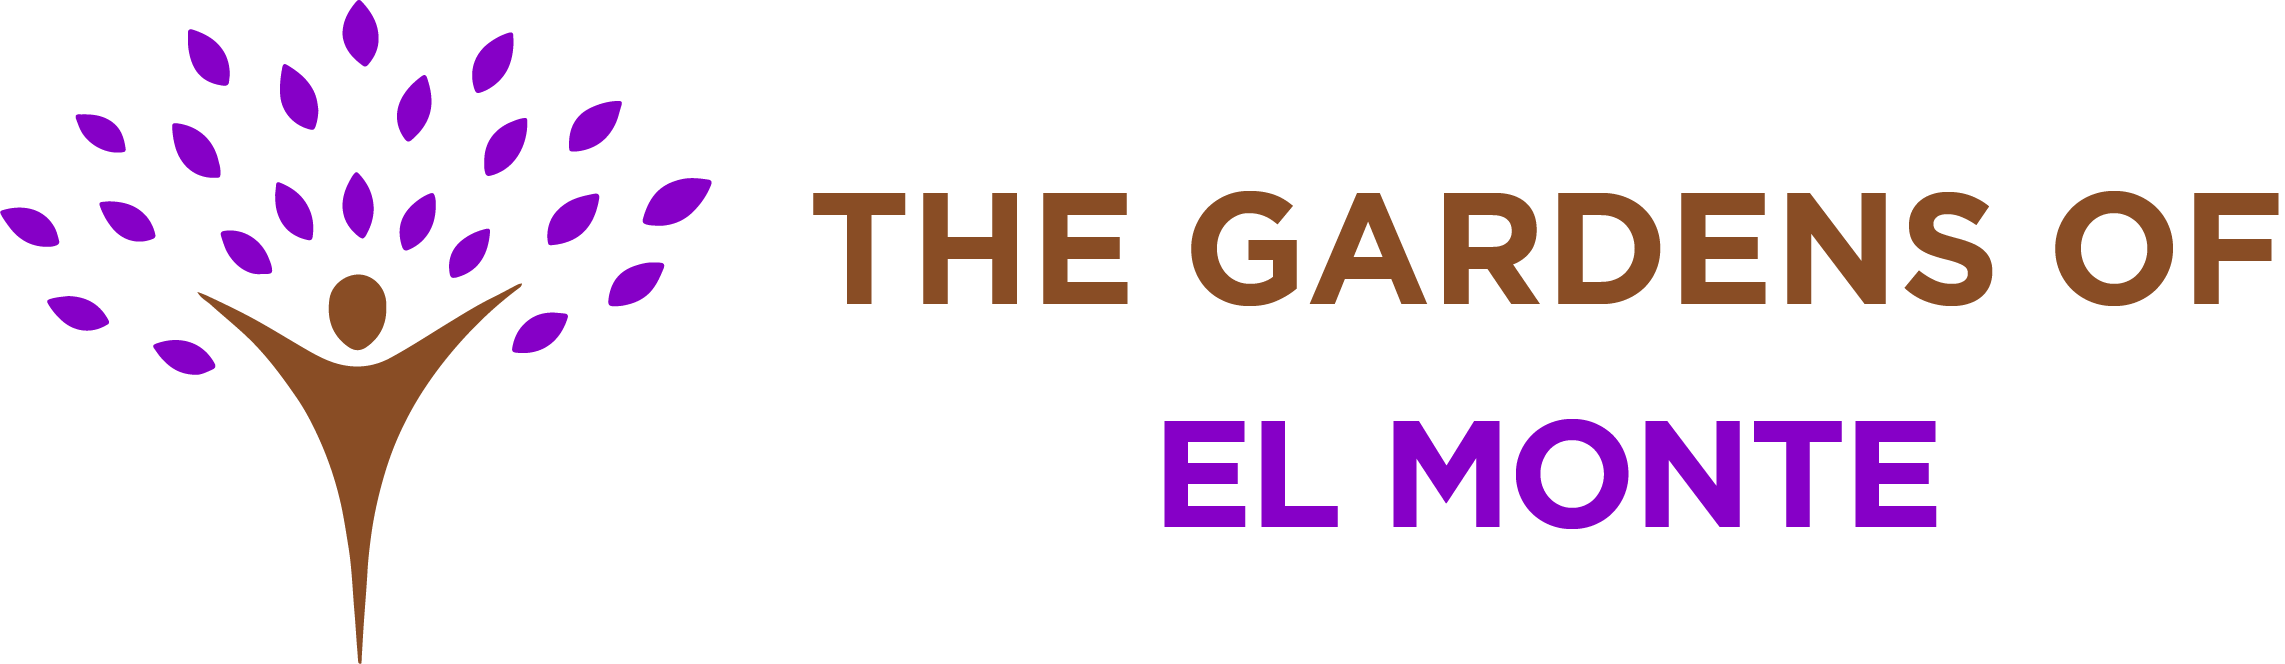 The Gardens of El Monte The Gardens of El Monte